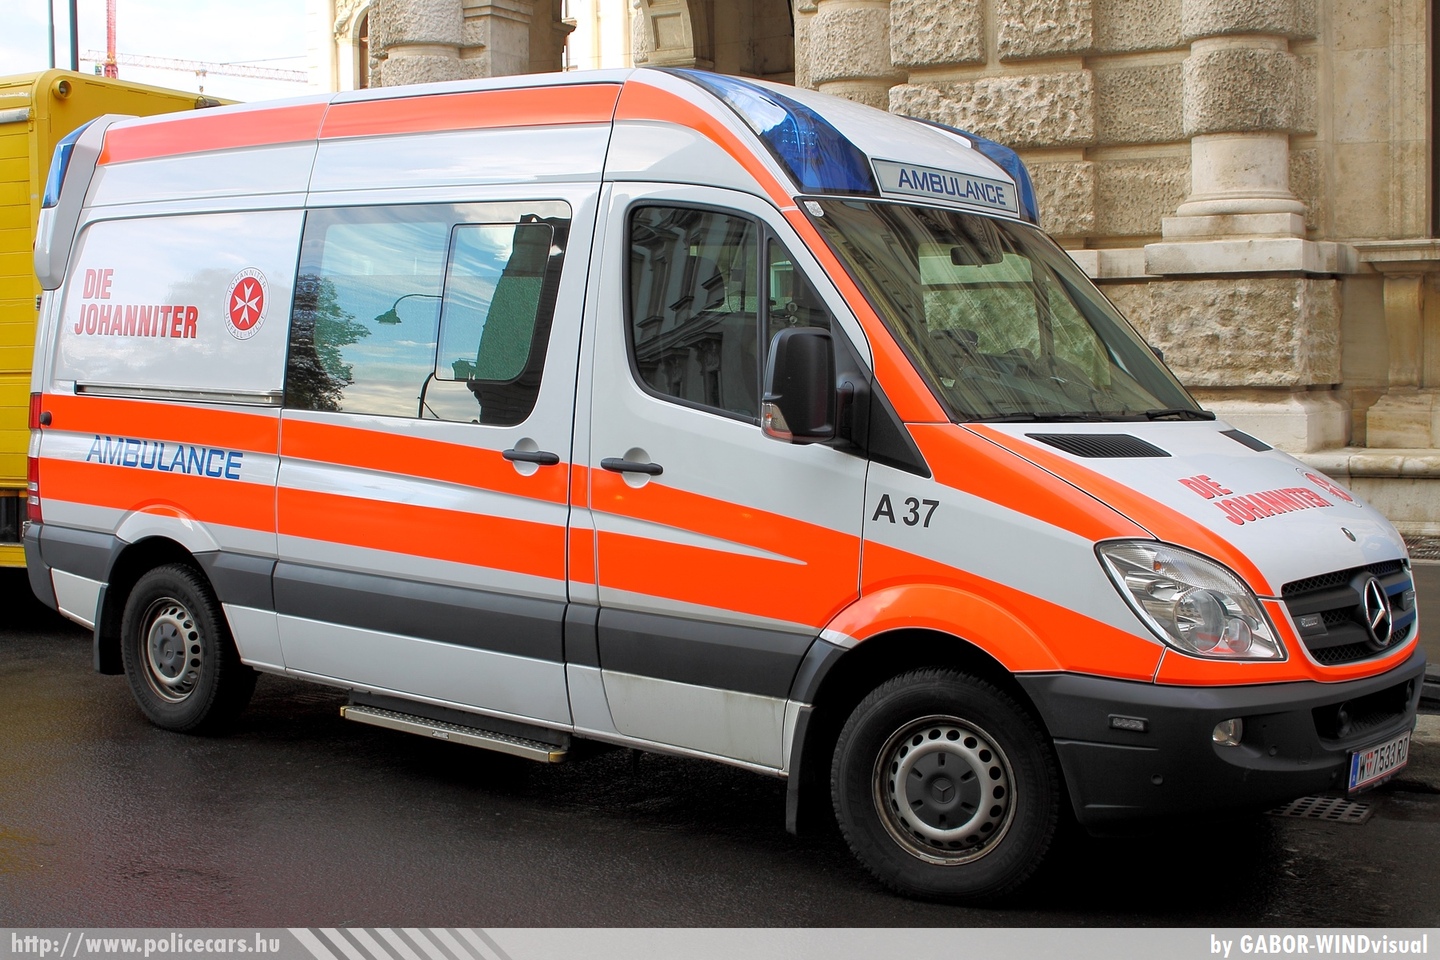 Mercedes Sprinter II, fotó: GABOR- WINDvisual
Keywords: osztrák Ausztria mentő mentőautó ambulance austrian Austria